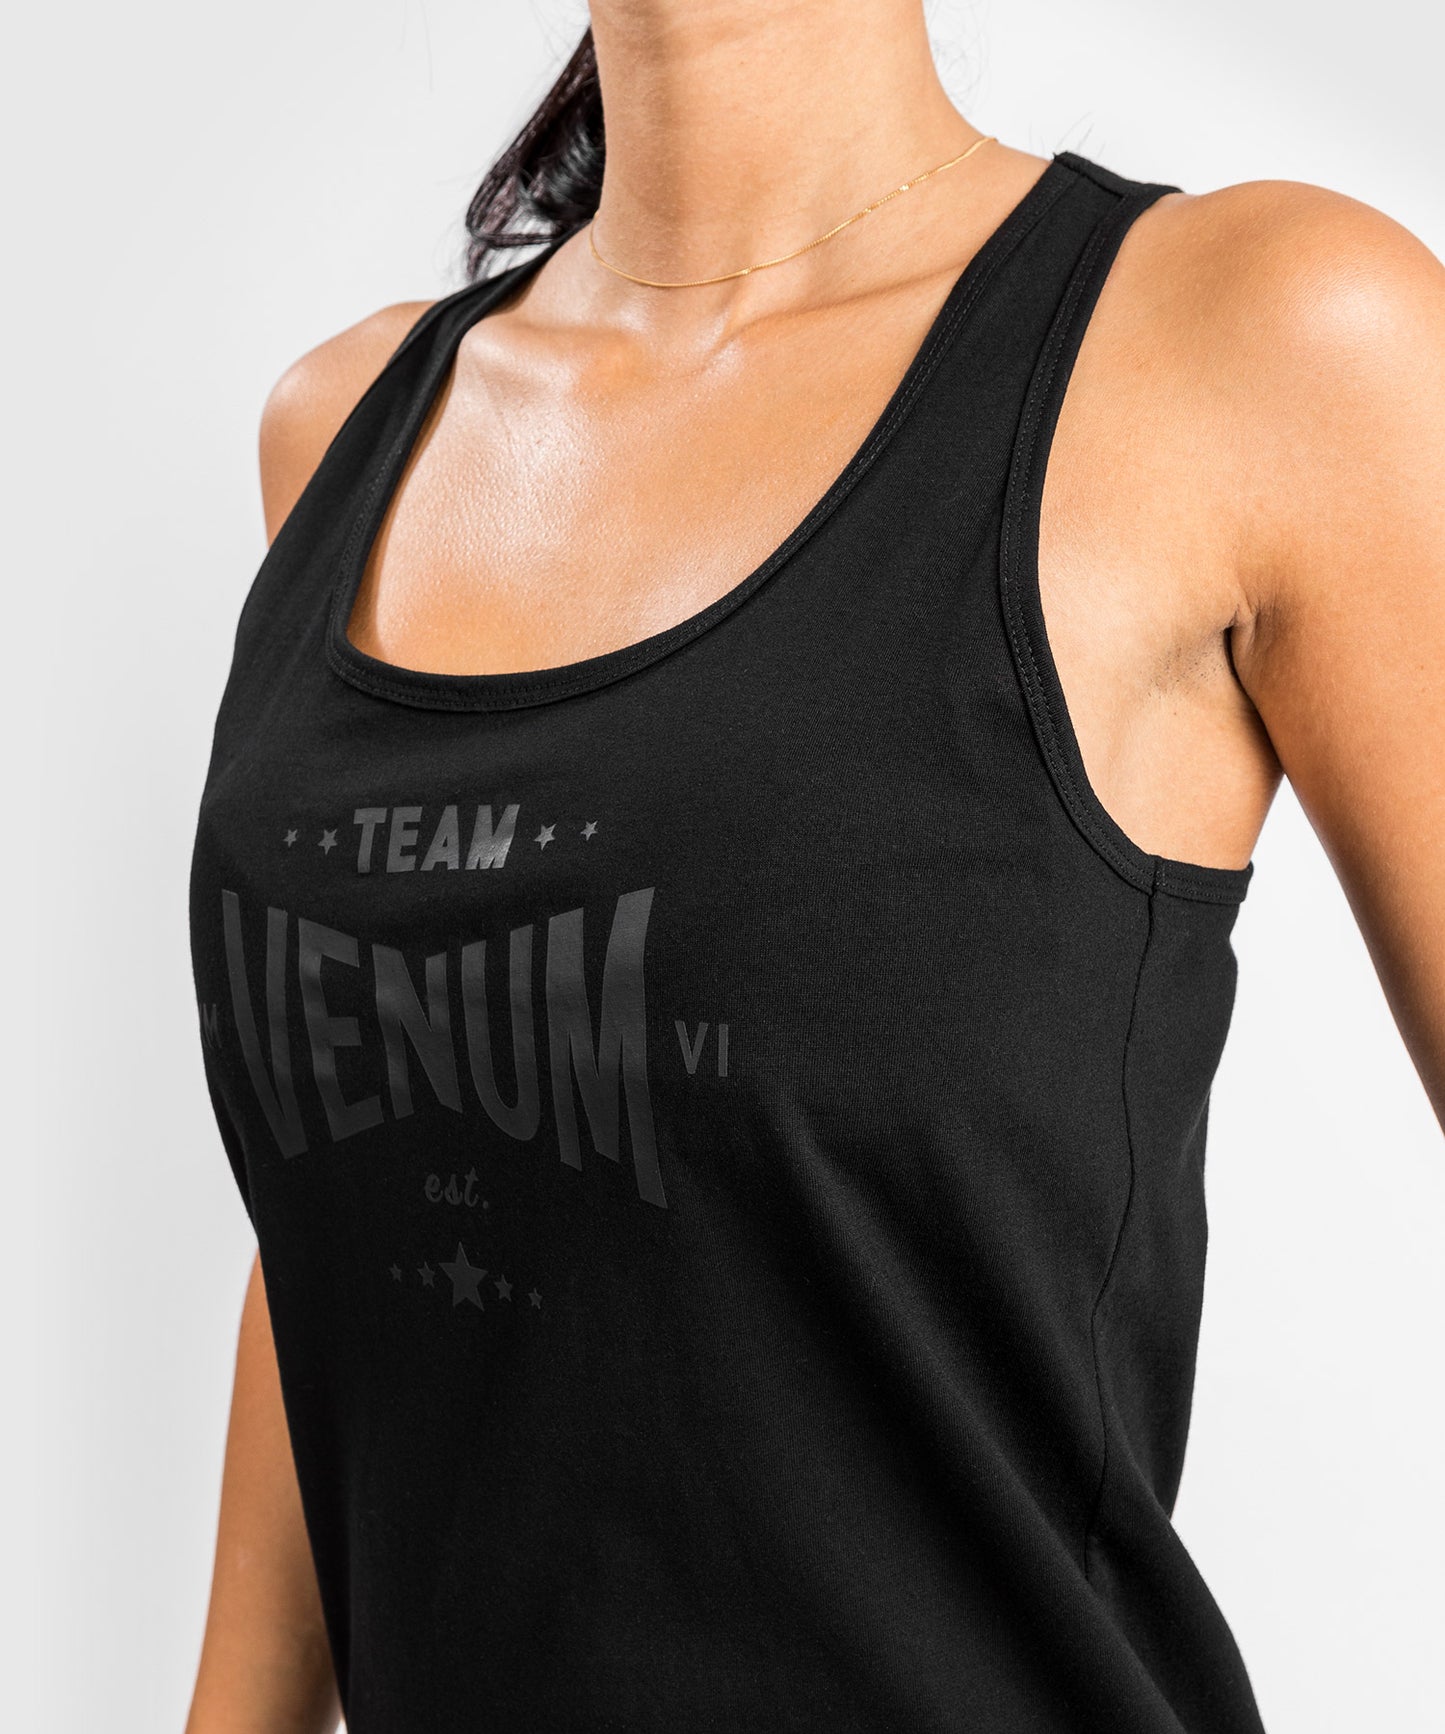 Camiseta de tirantes Venum Team 2.0 - Para mujer - Negra